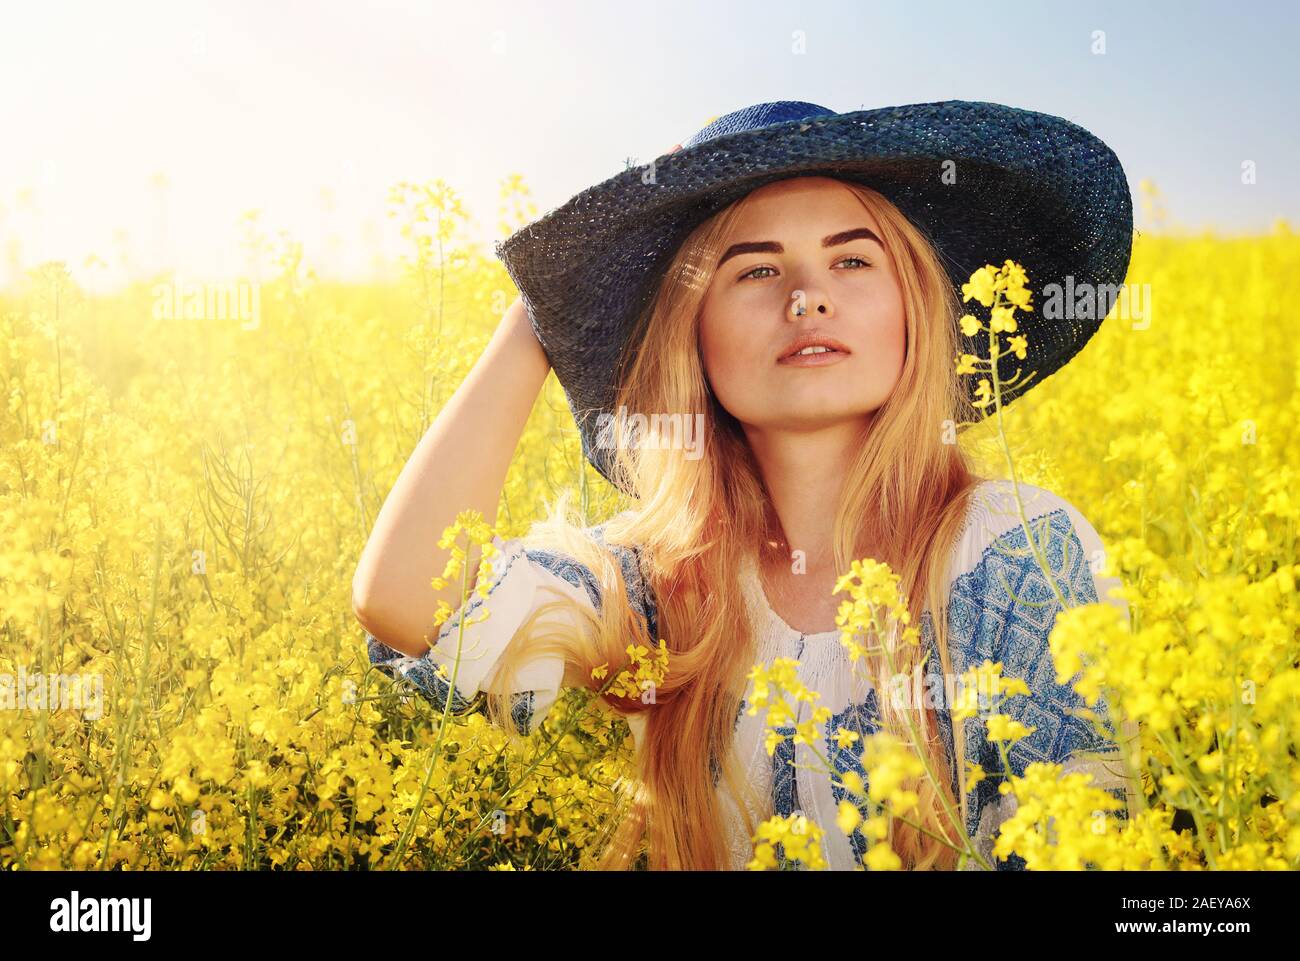 Junge Frau Porträt im Rumänischen Bluse (IE KLEIDUNG) auf Raps Feld in der Blüte Stockfoto